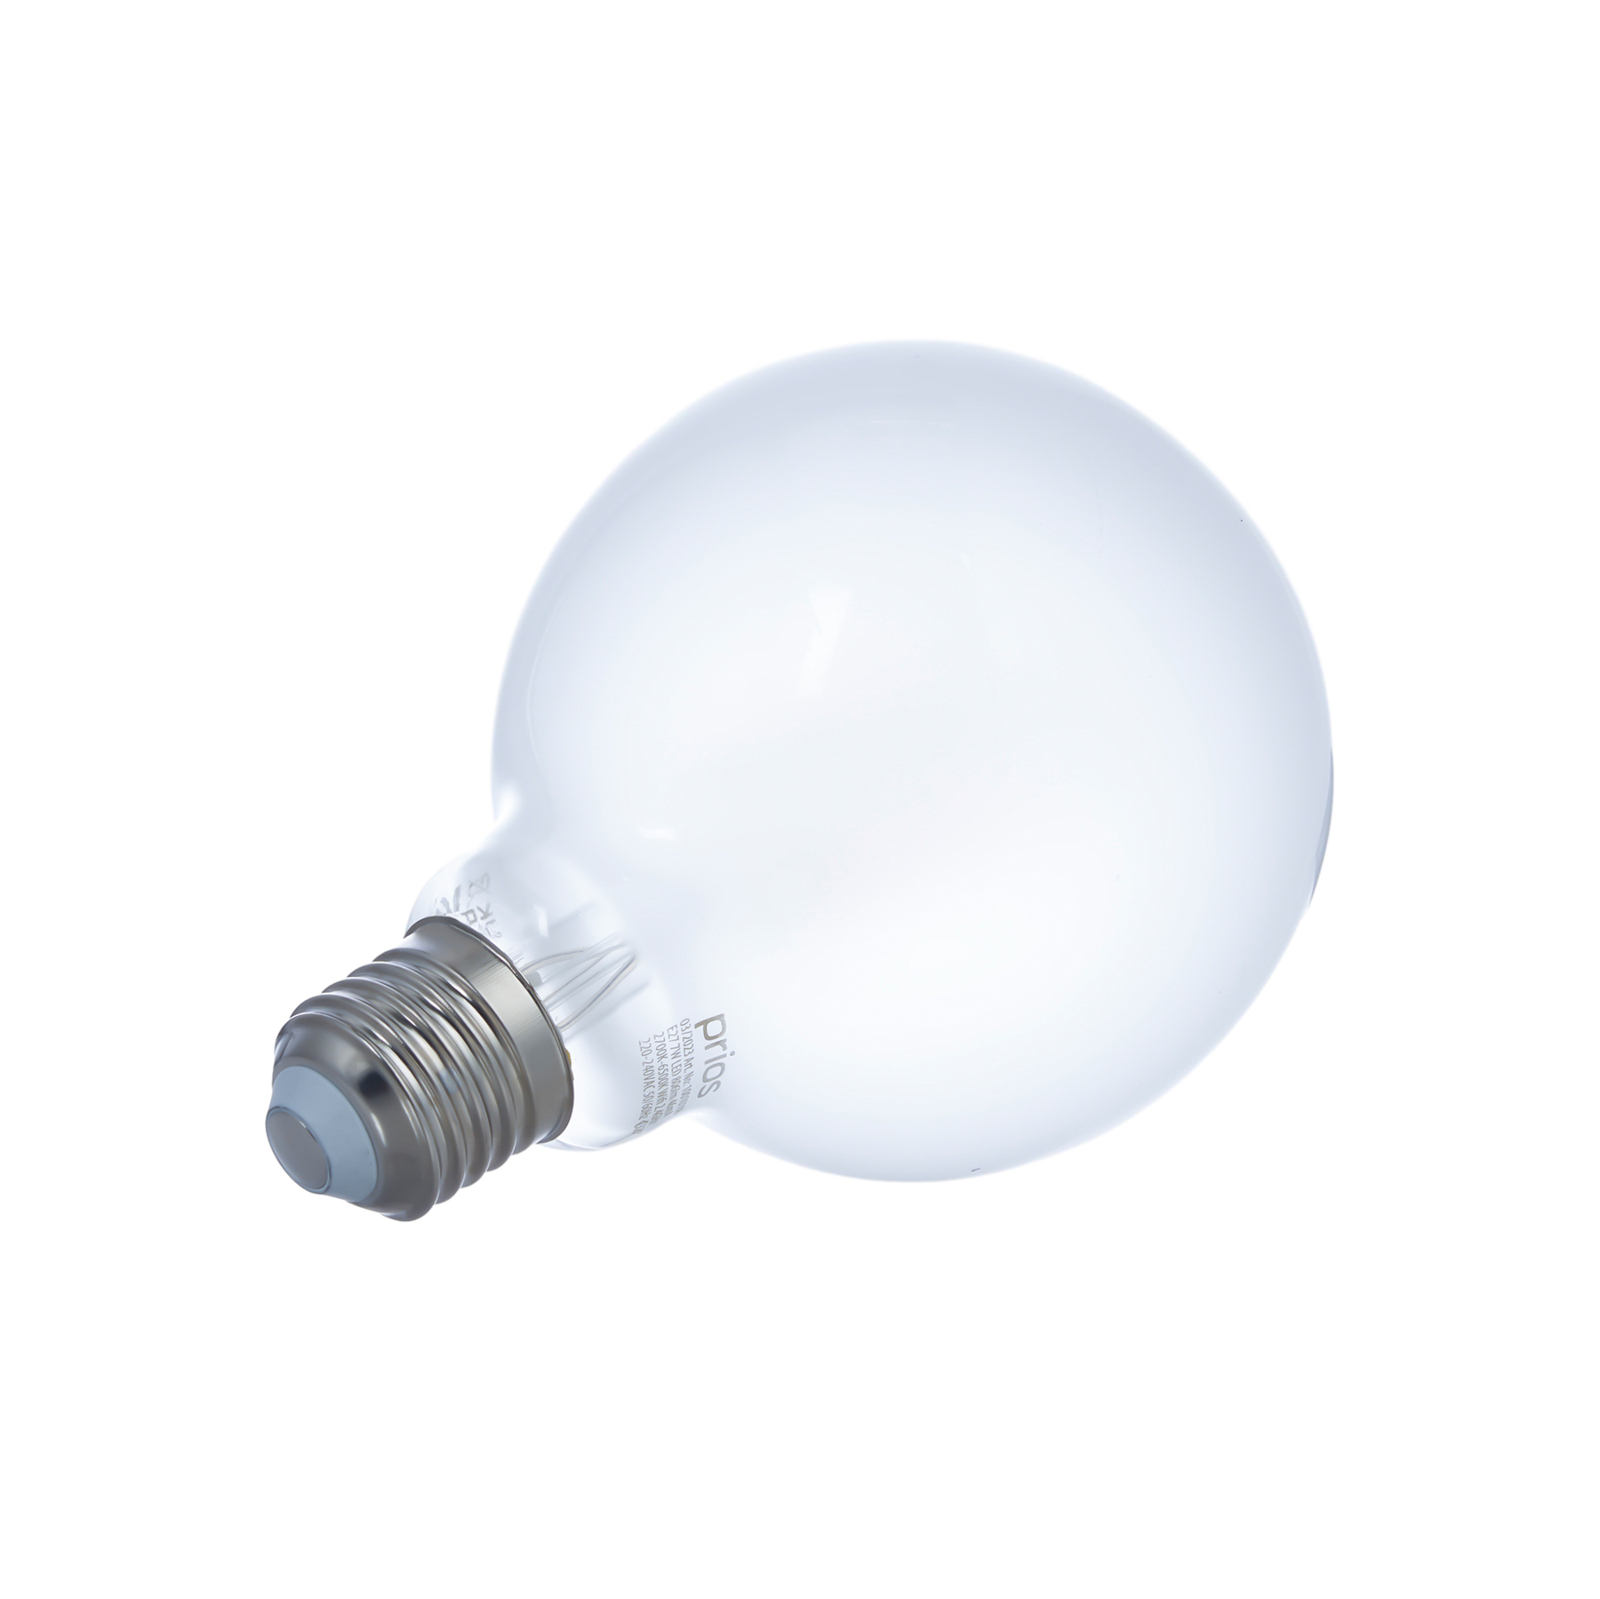 LUUMR Smart LED-lampuppsättning med 2 E27 G95 7W matt Tuya